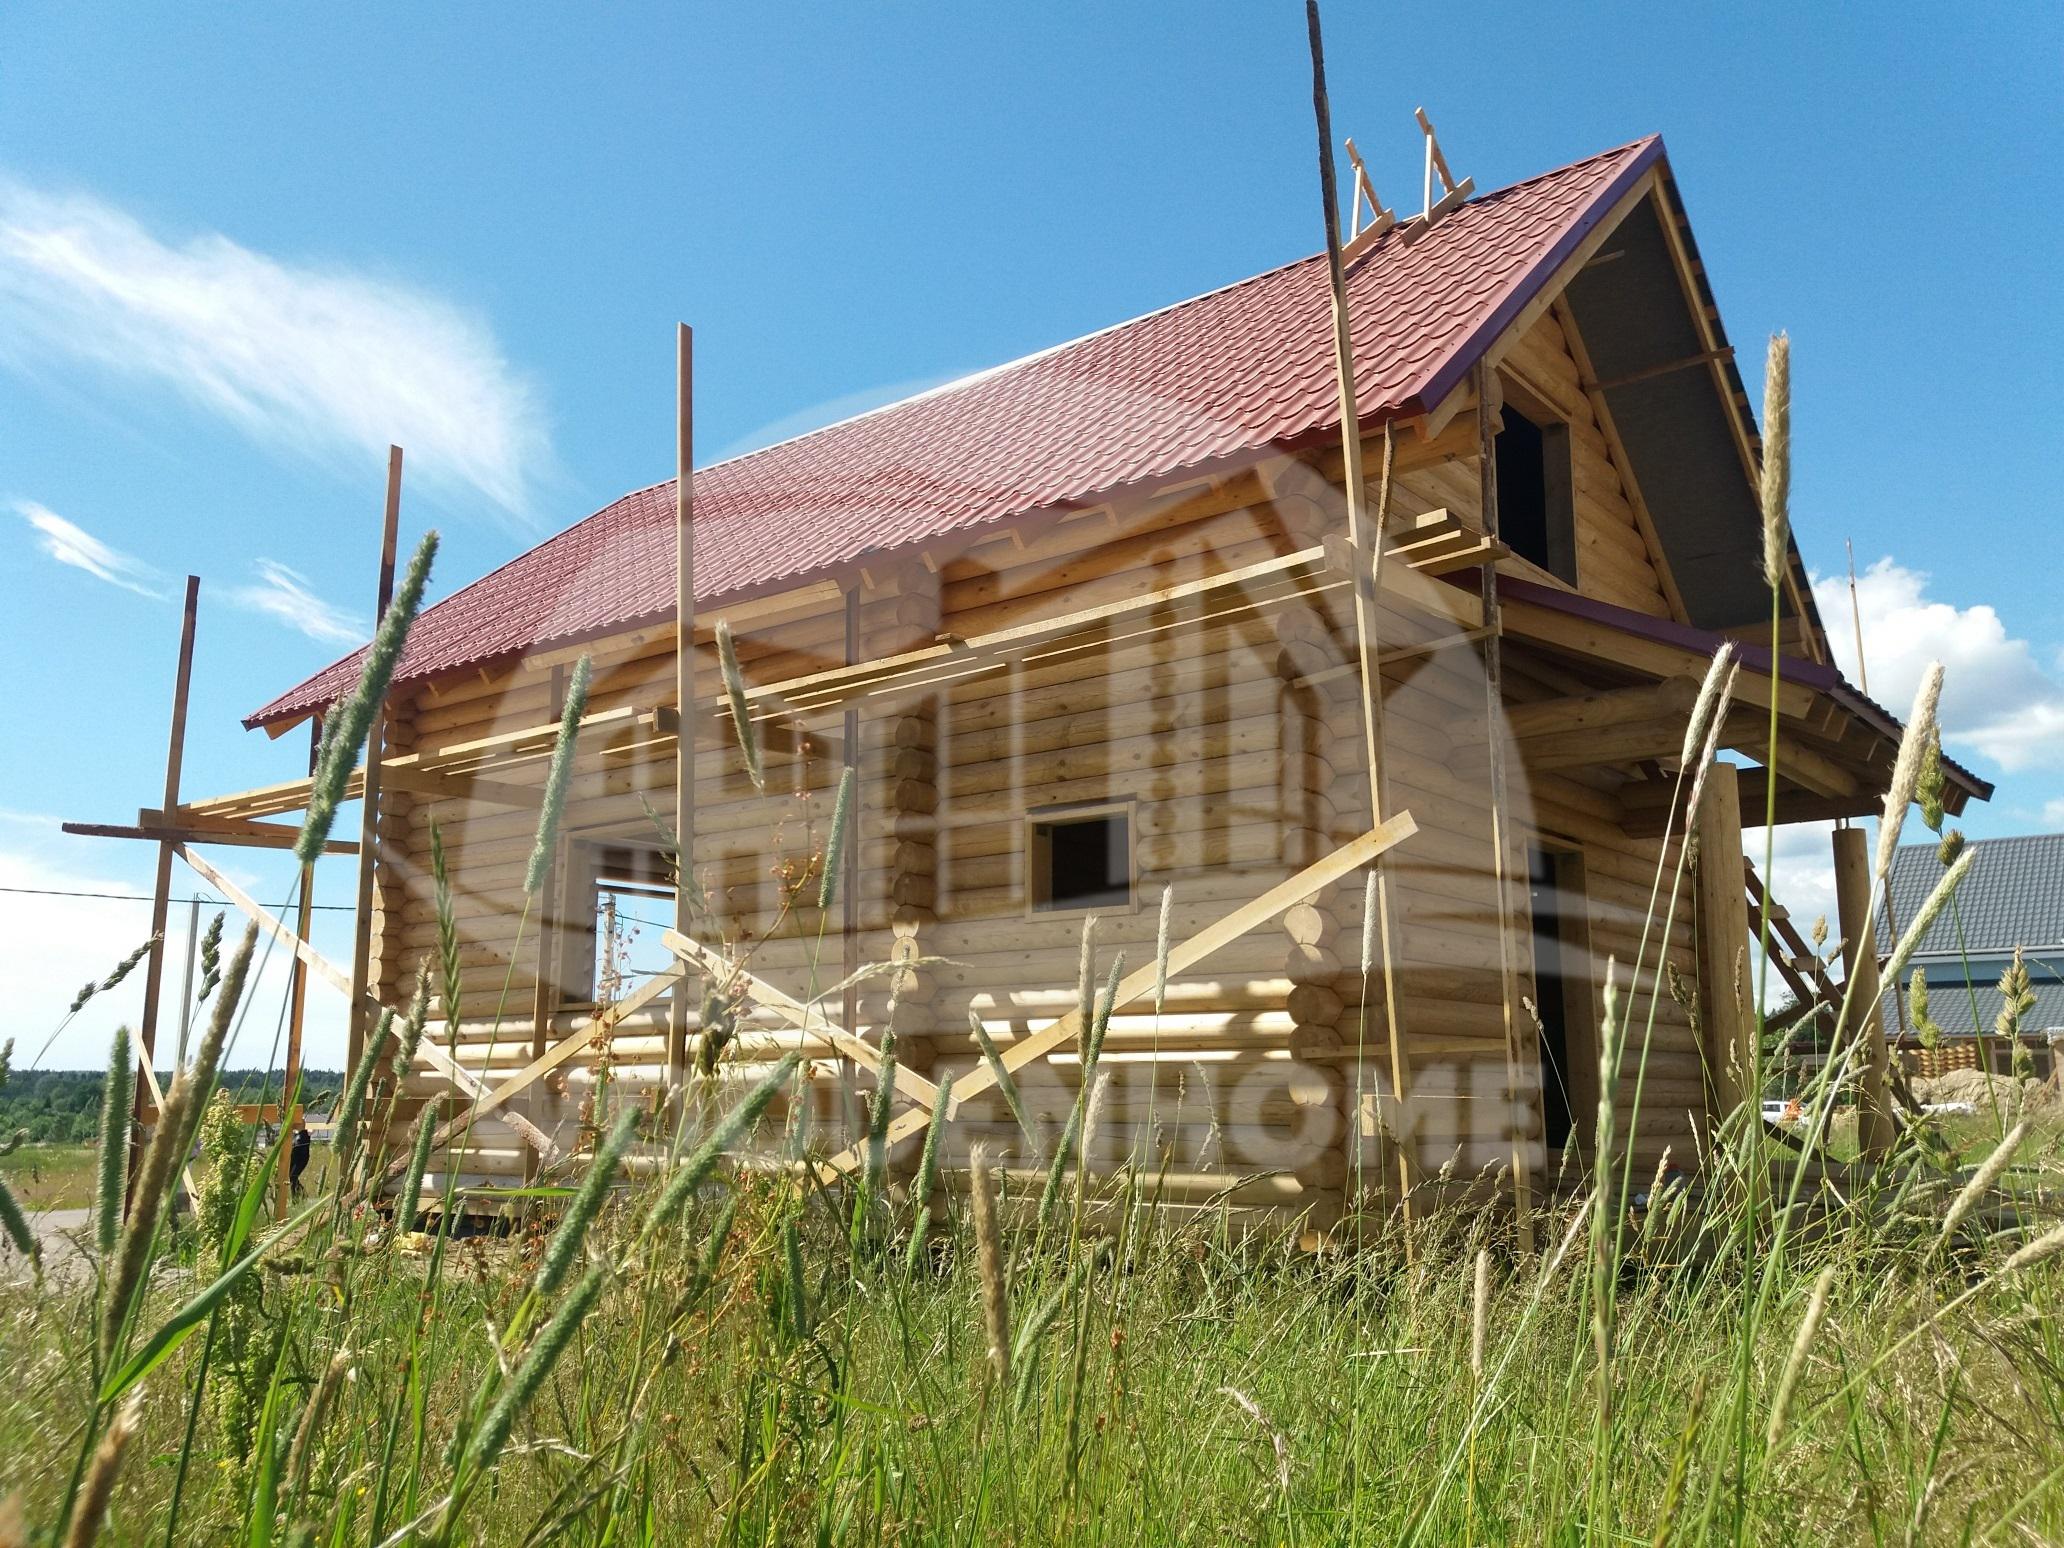 строительсвто деревянных домов